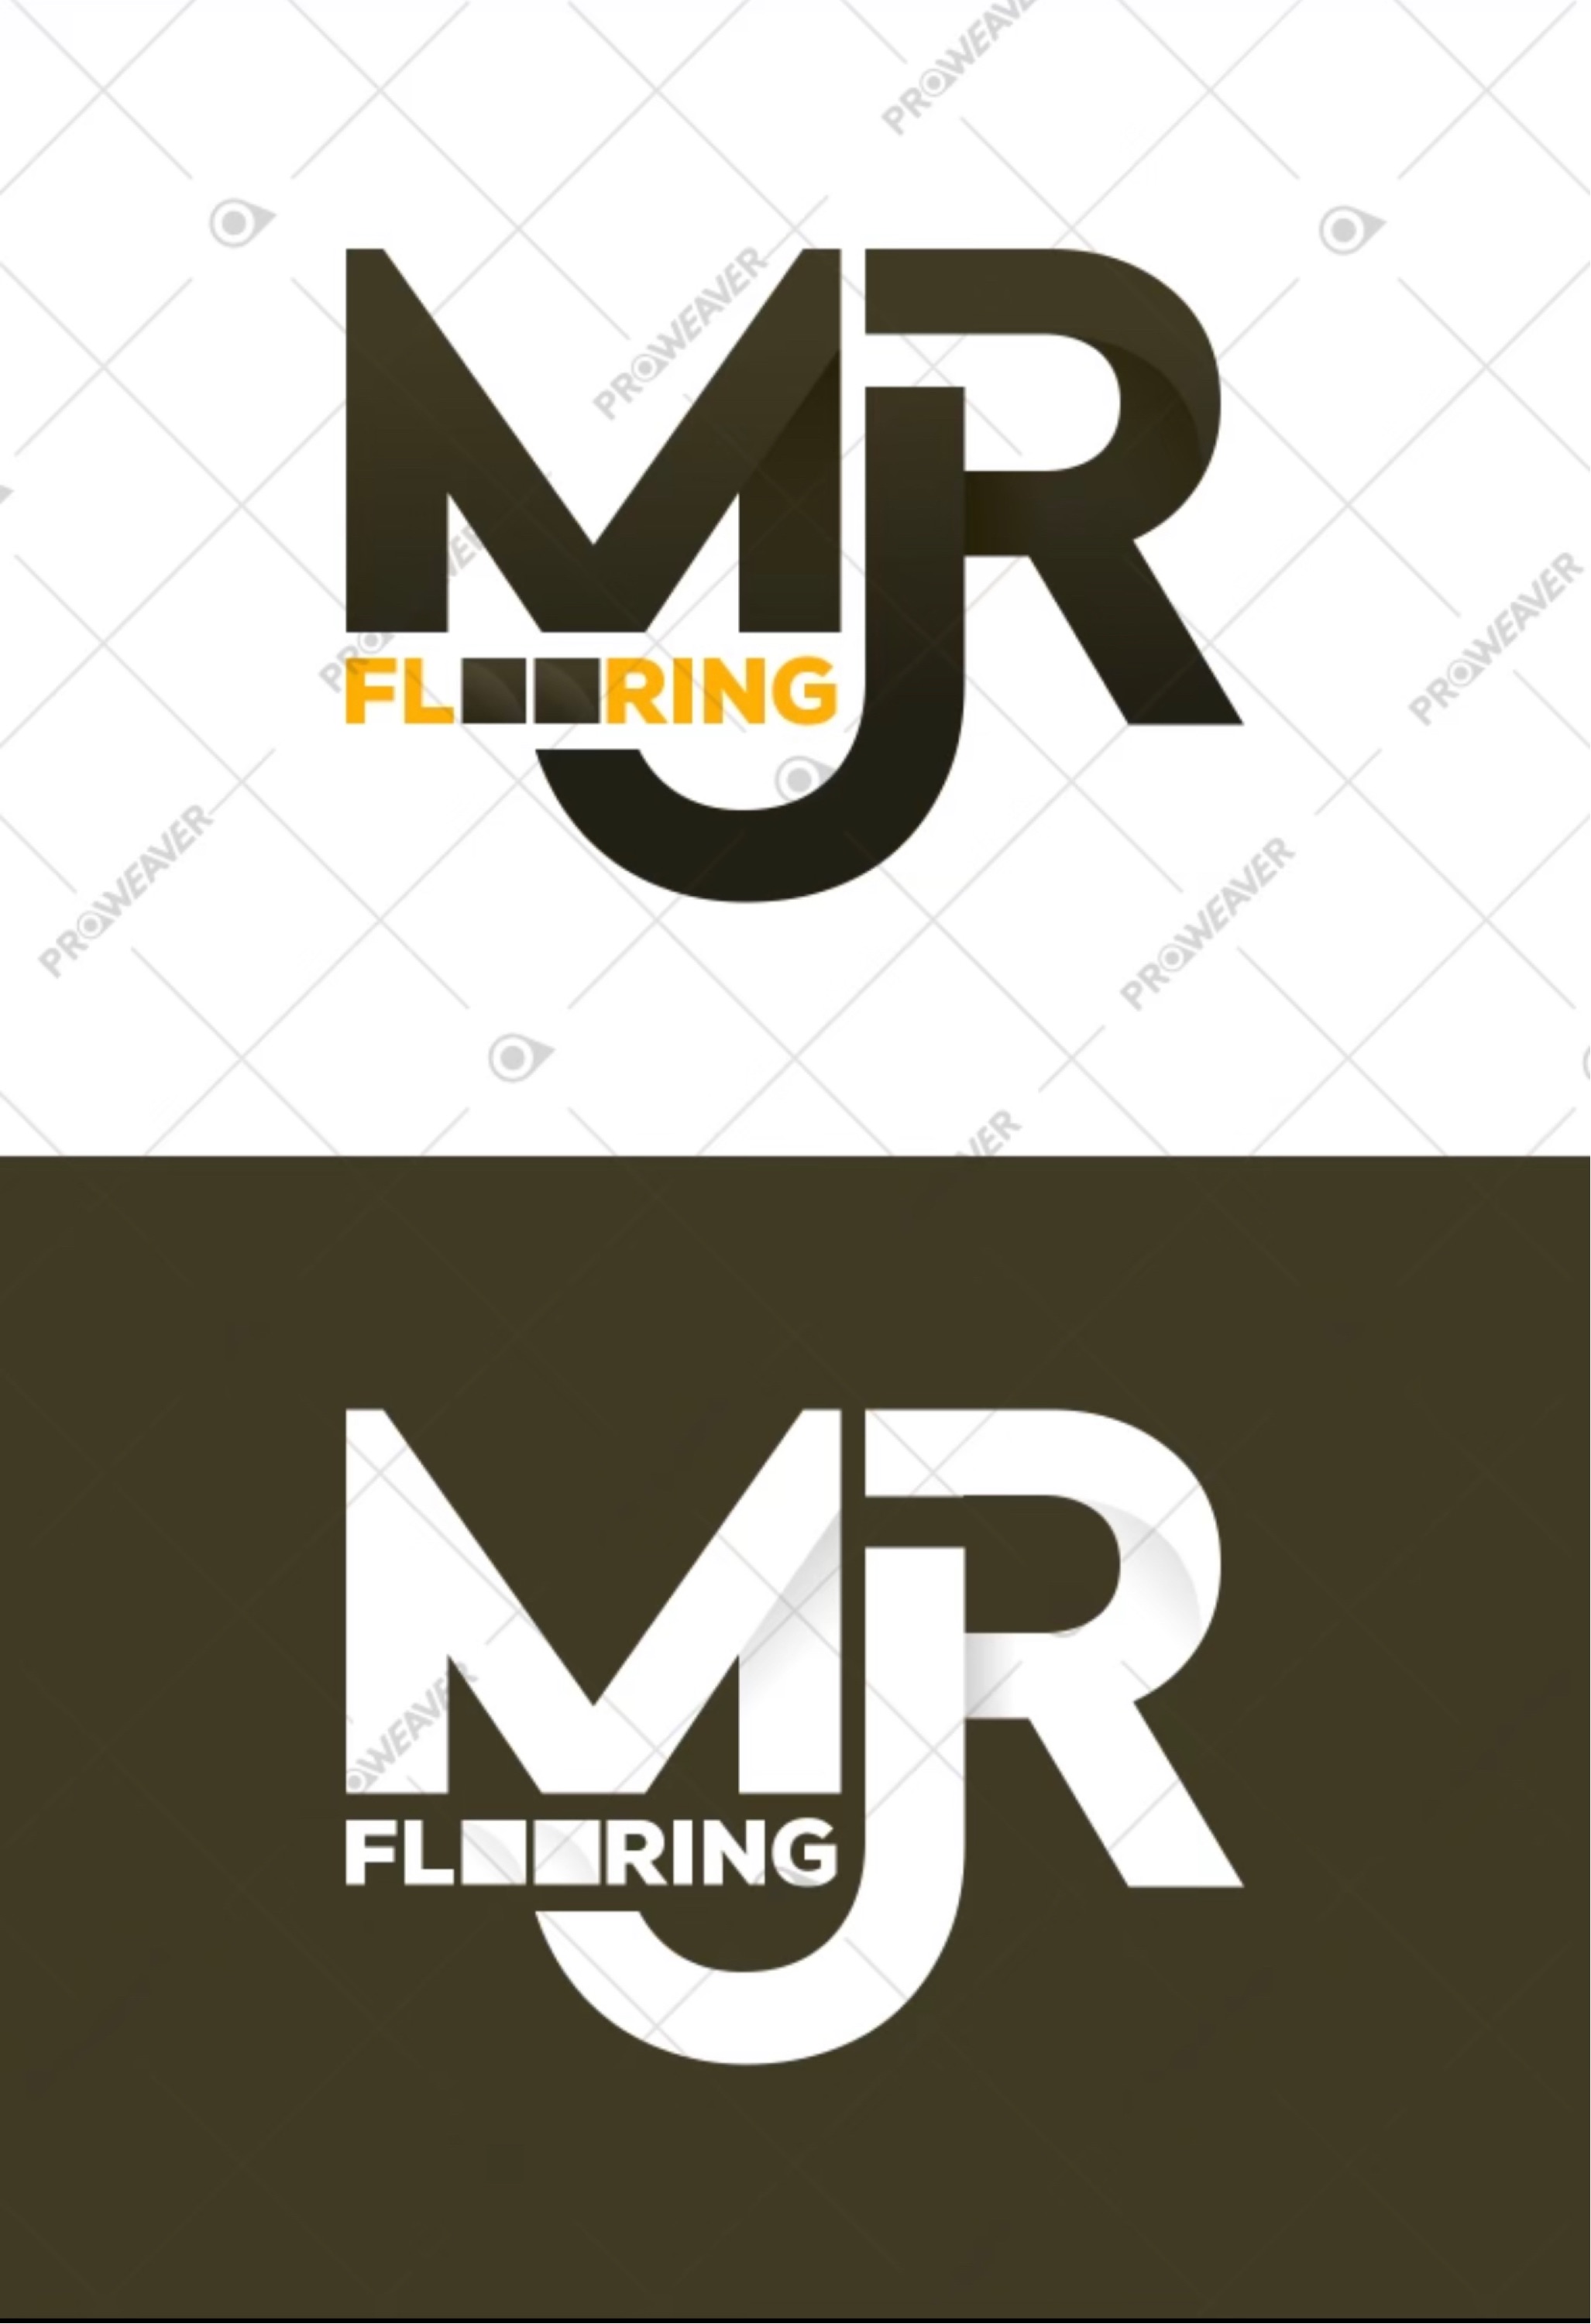 MJR Flooring Logo